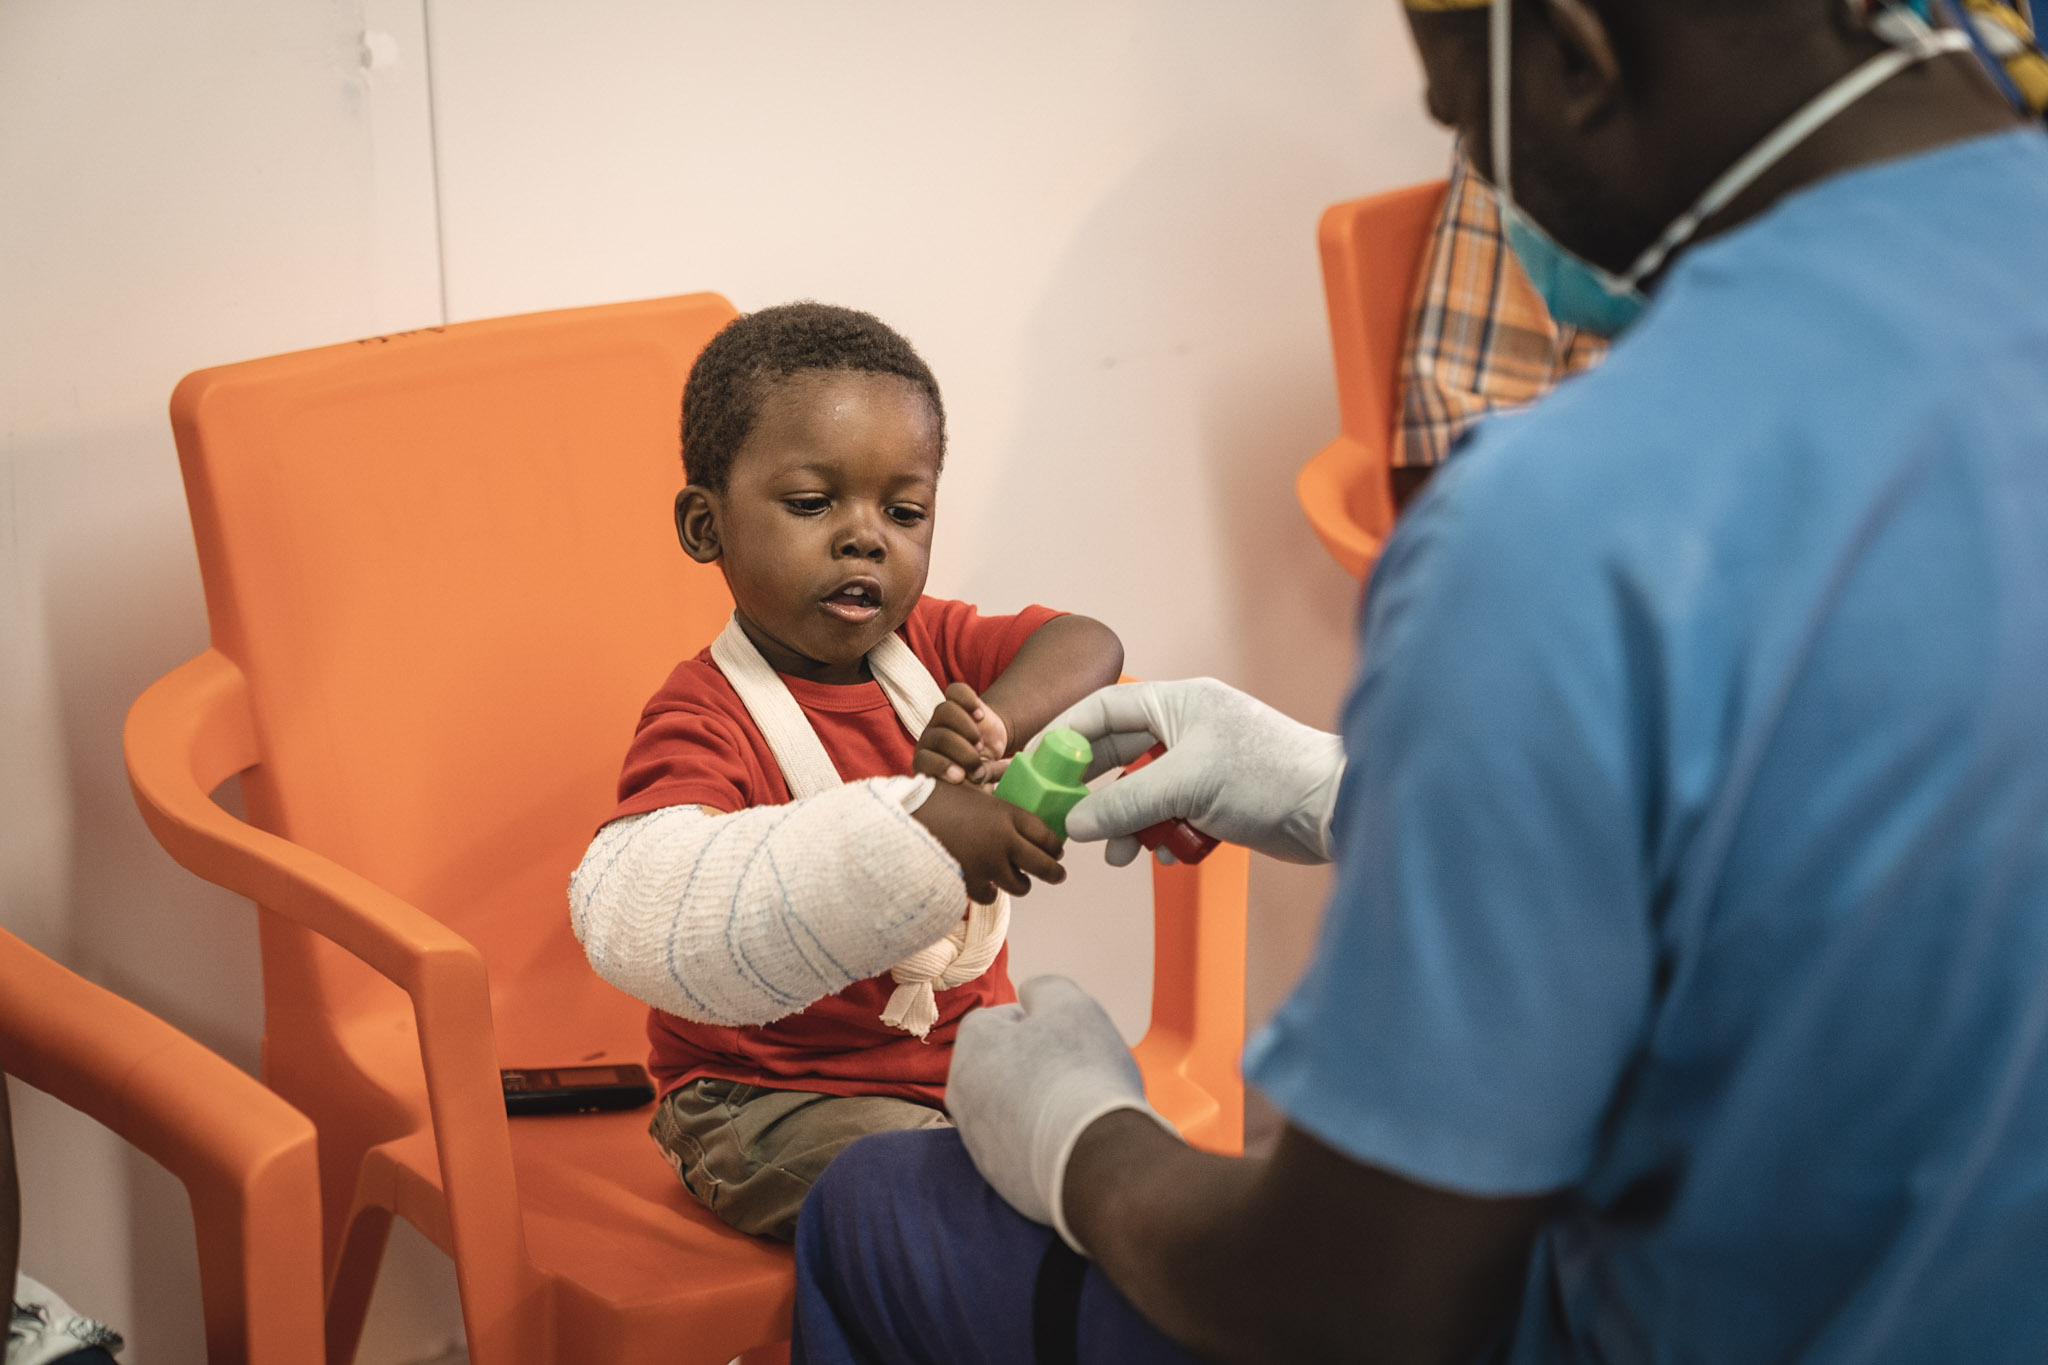 최근 아이티에서 발생한 강진으로 팔에 부상을 입은 3세 아동 오스메(Osmé)가 물리치료사와 놀고 있다. ©Pierre Fromentin/MSF